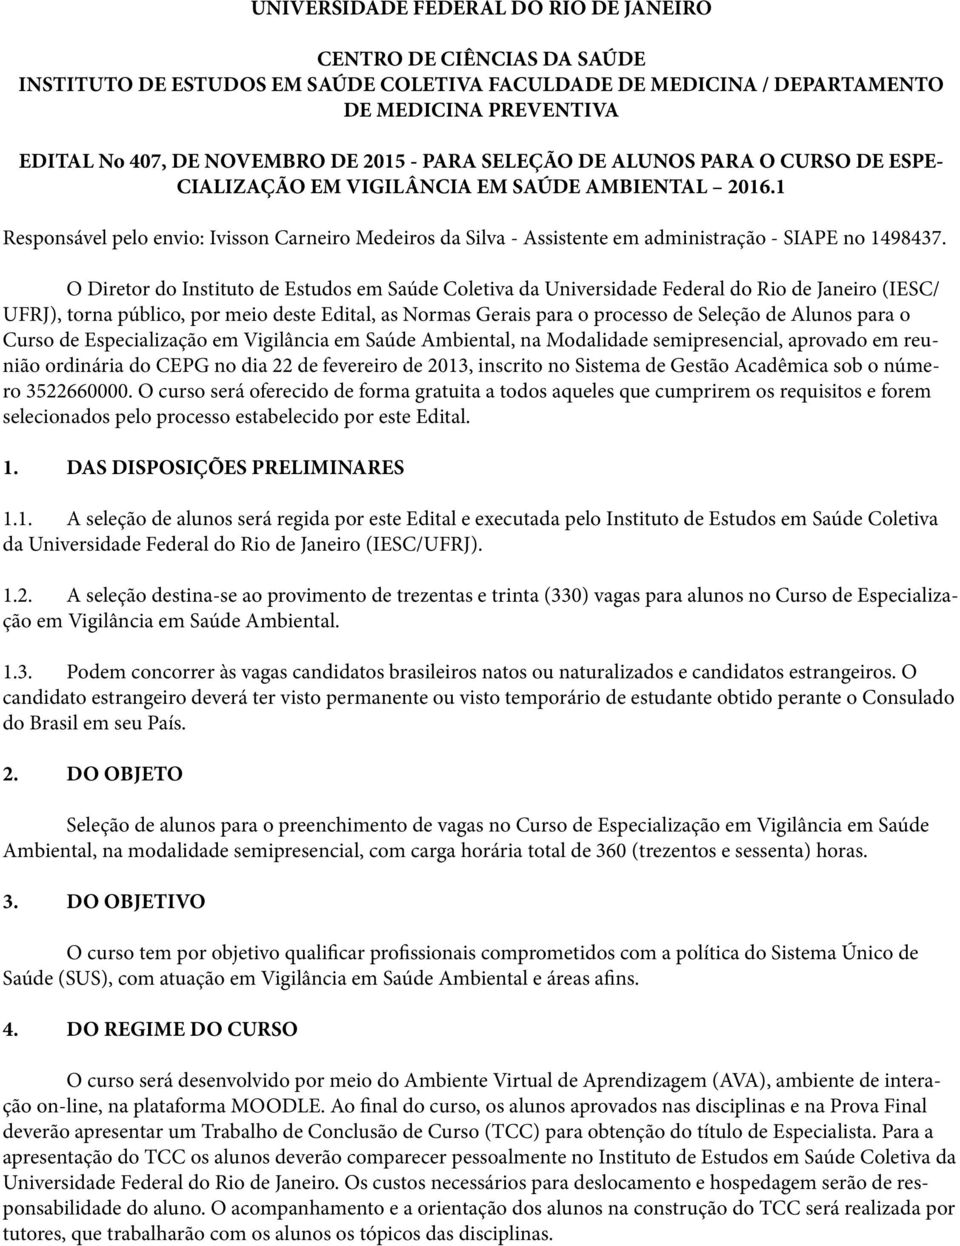 1 Responsável pelo envio: Ivisson Carneiro Medeiros da Silva - Assistente em administração - SIAPE no 1498437.